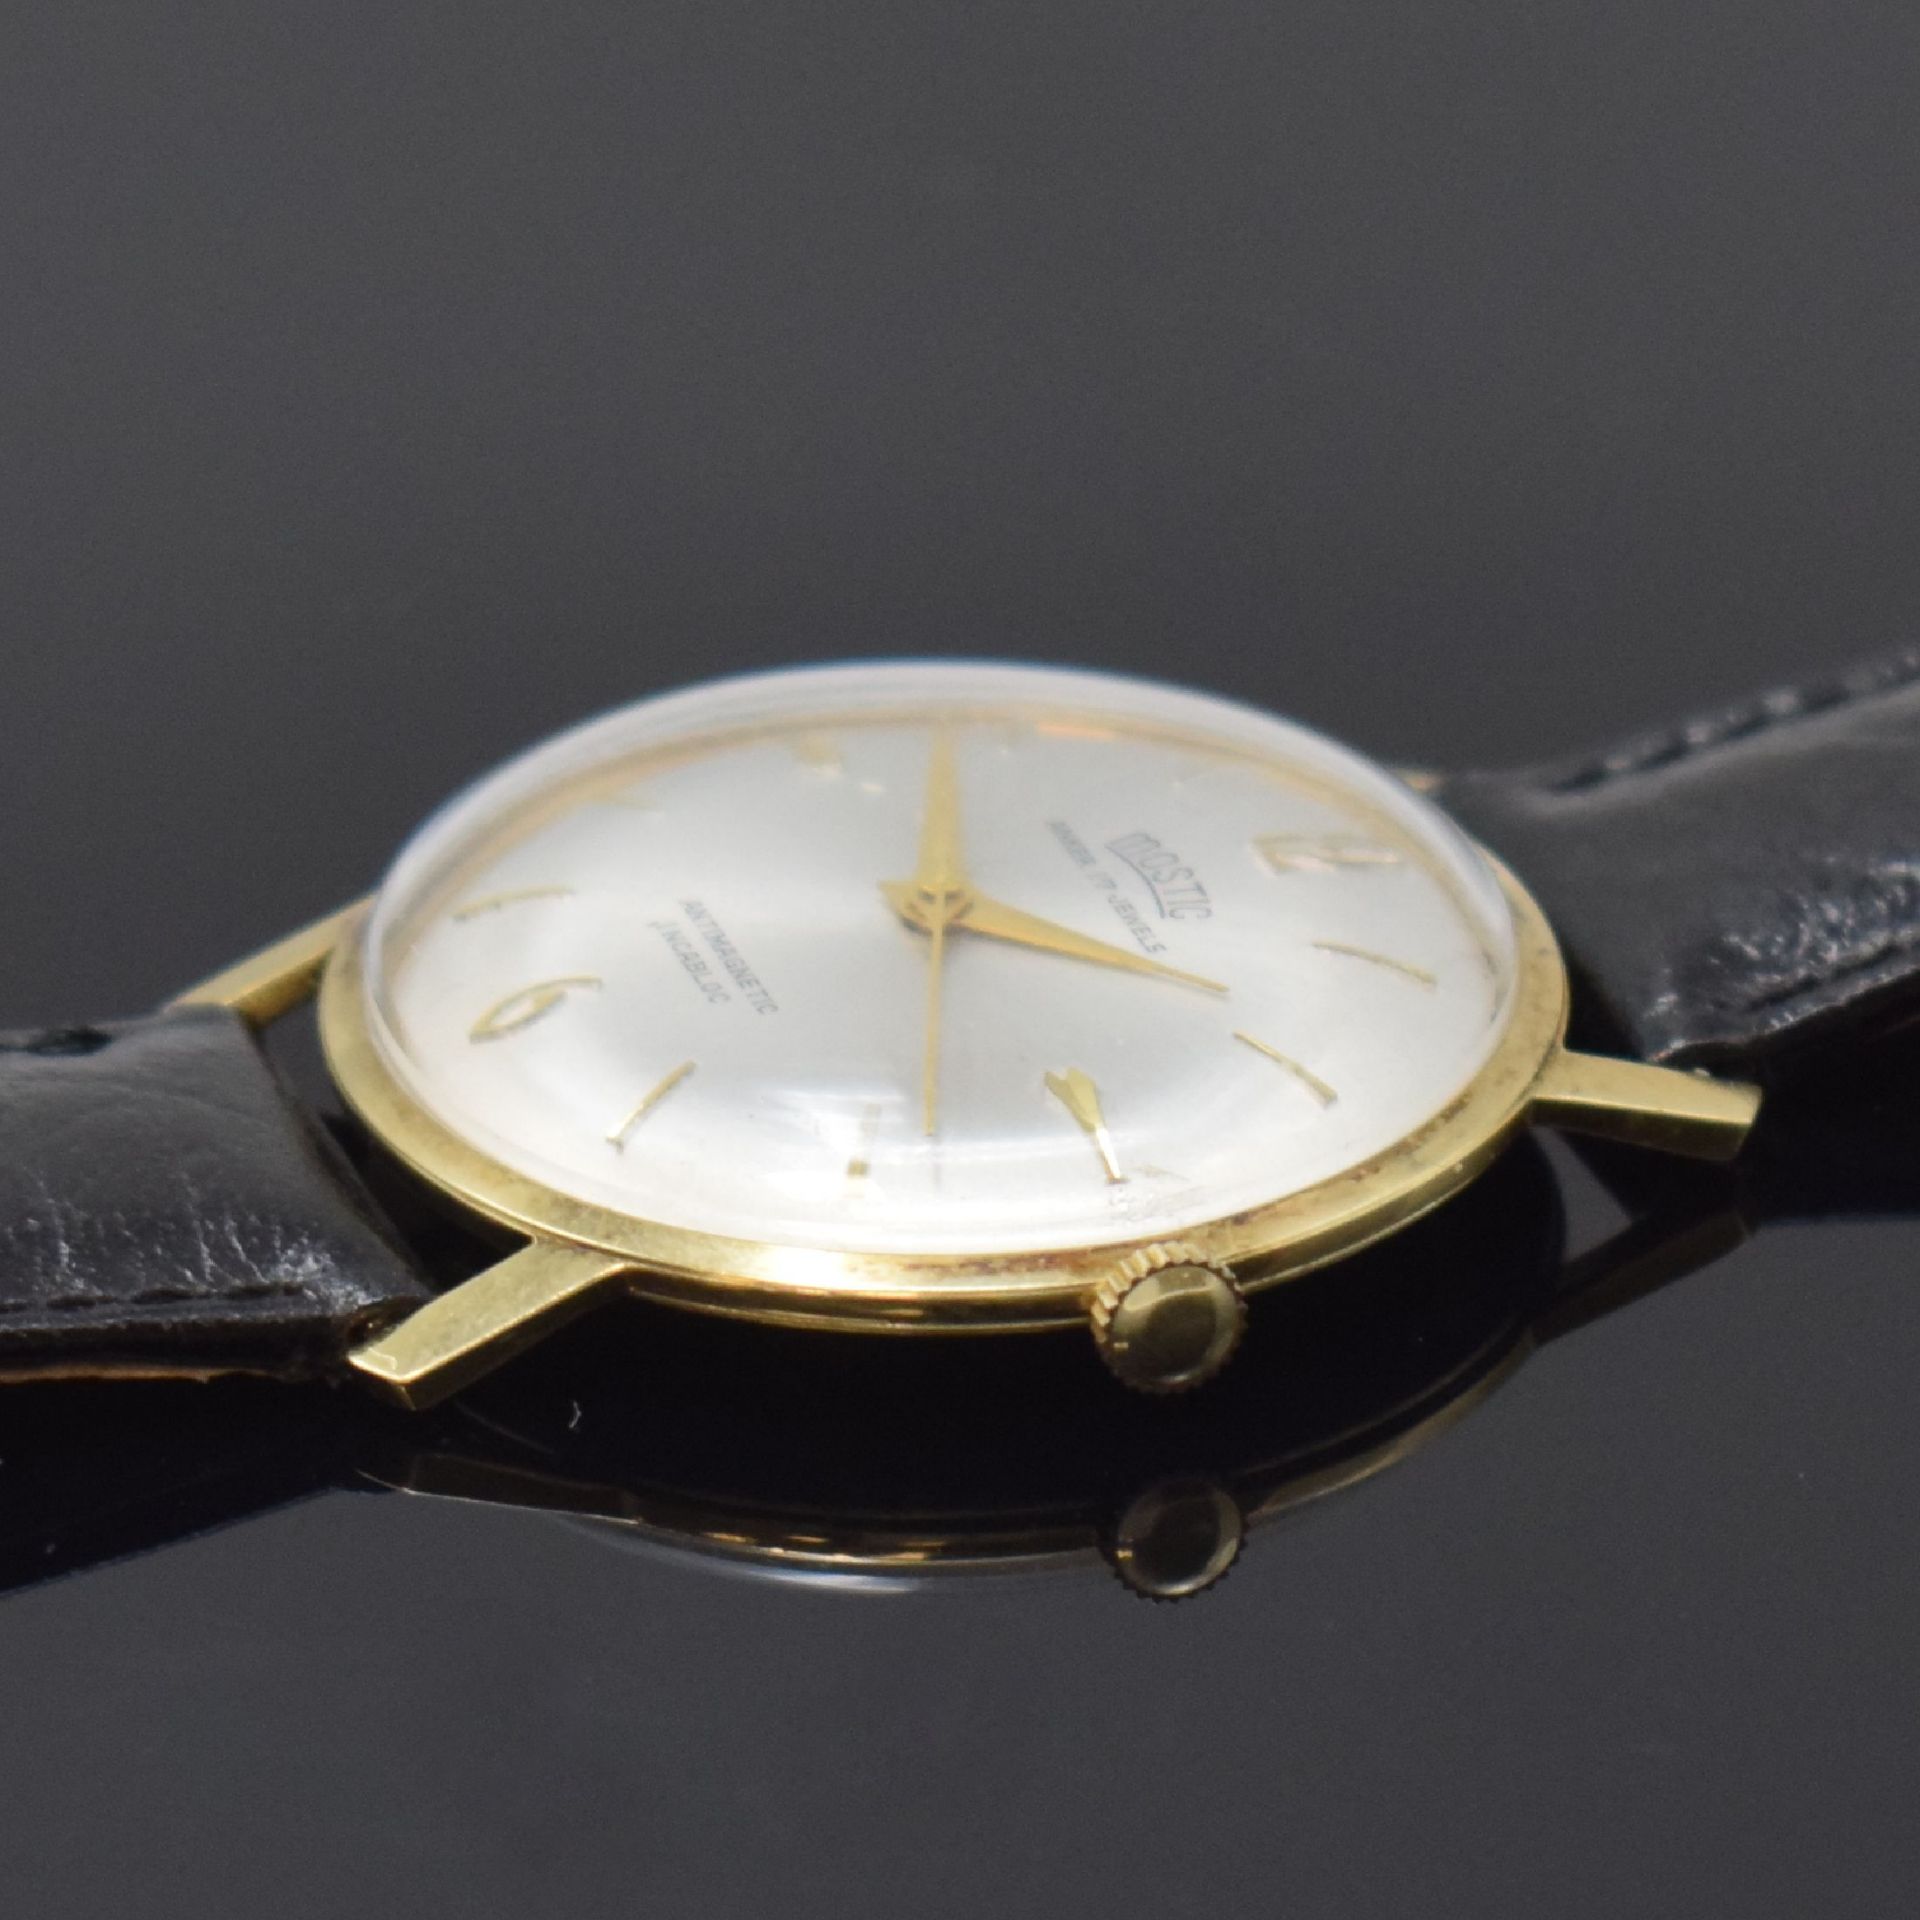 MOSTIC Armbanduhr in GG 585/000, Schweiz um 1965, - Bild 3 aus 5